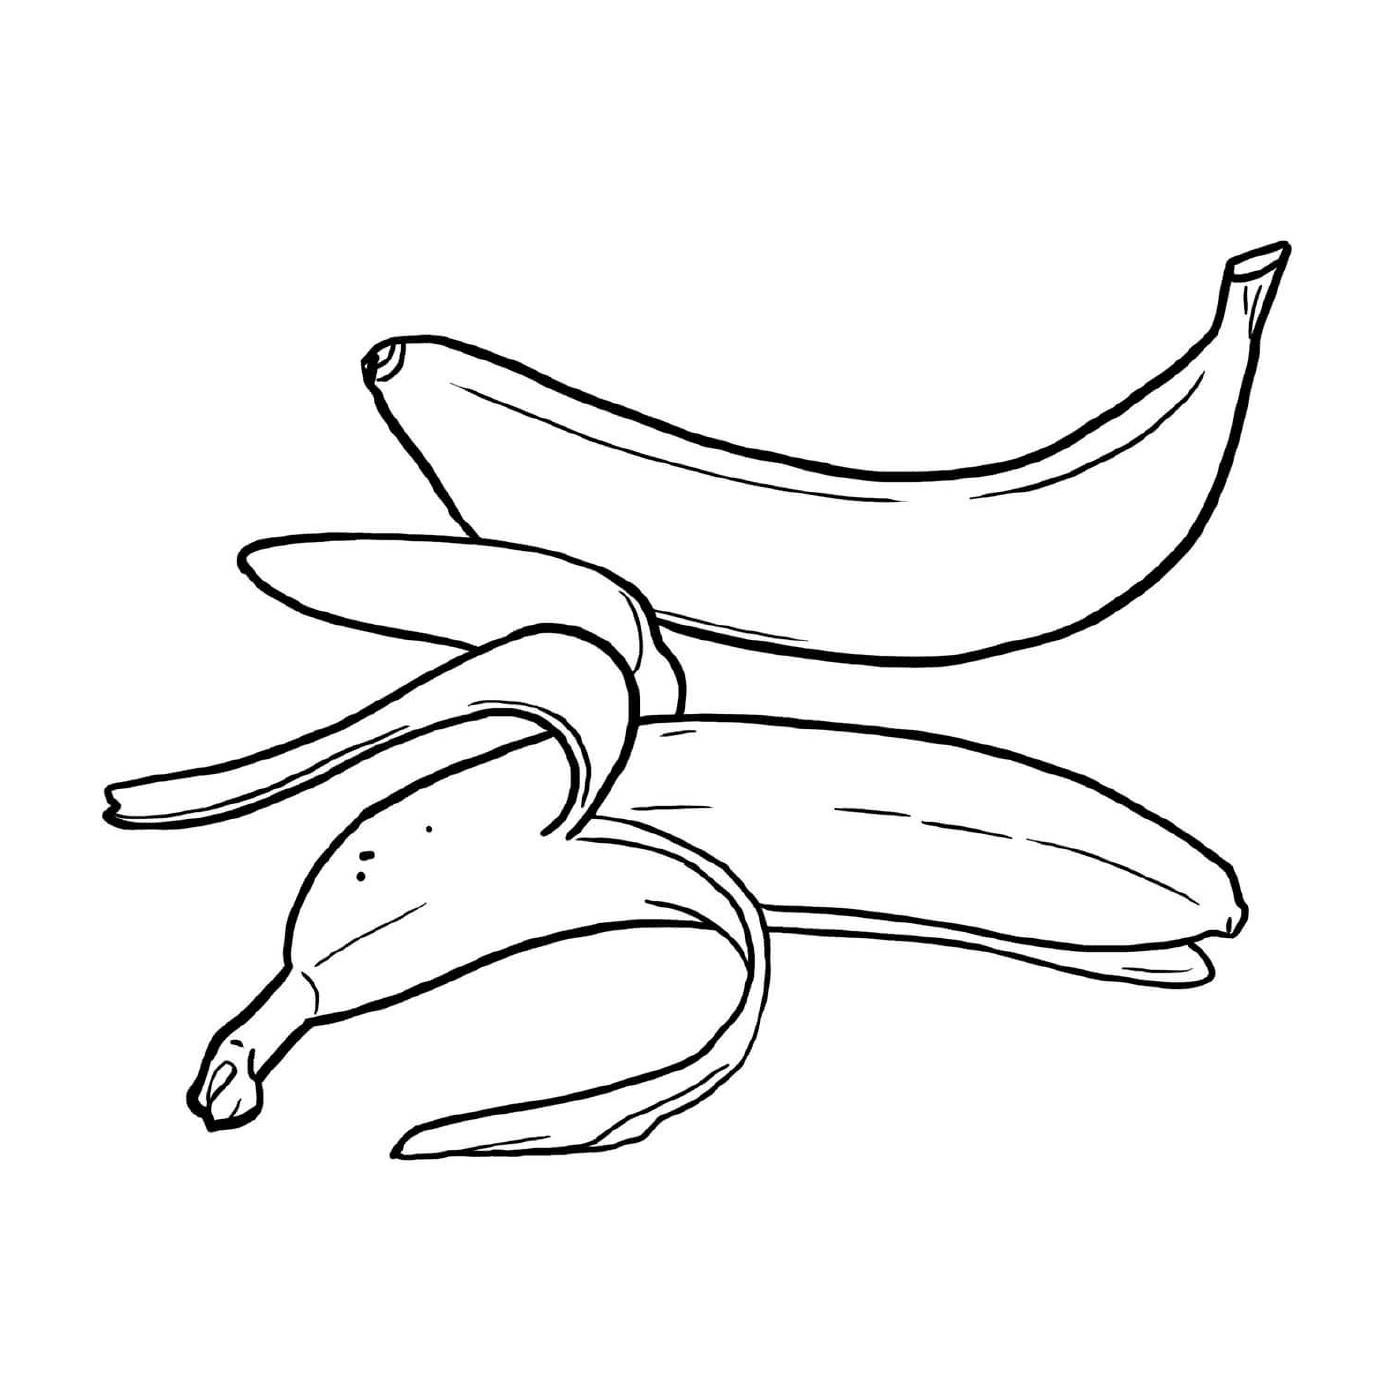  Несколько бананов, помещаемых на стол 